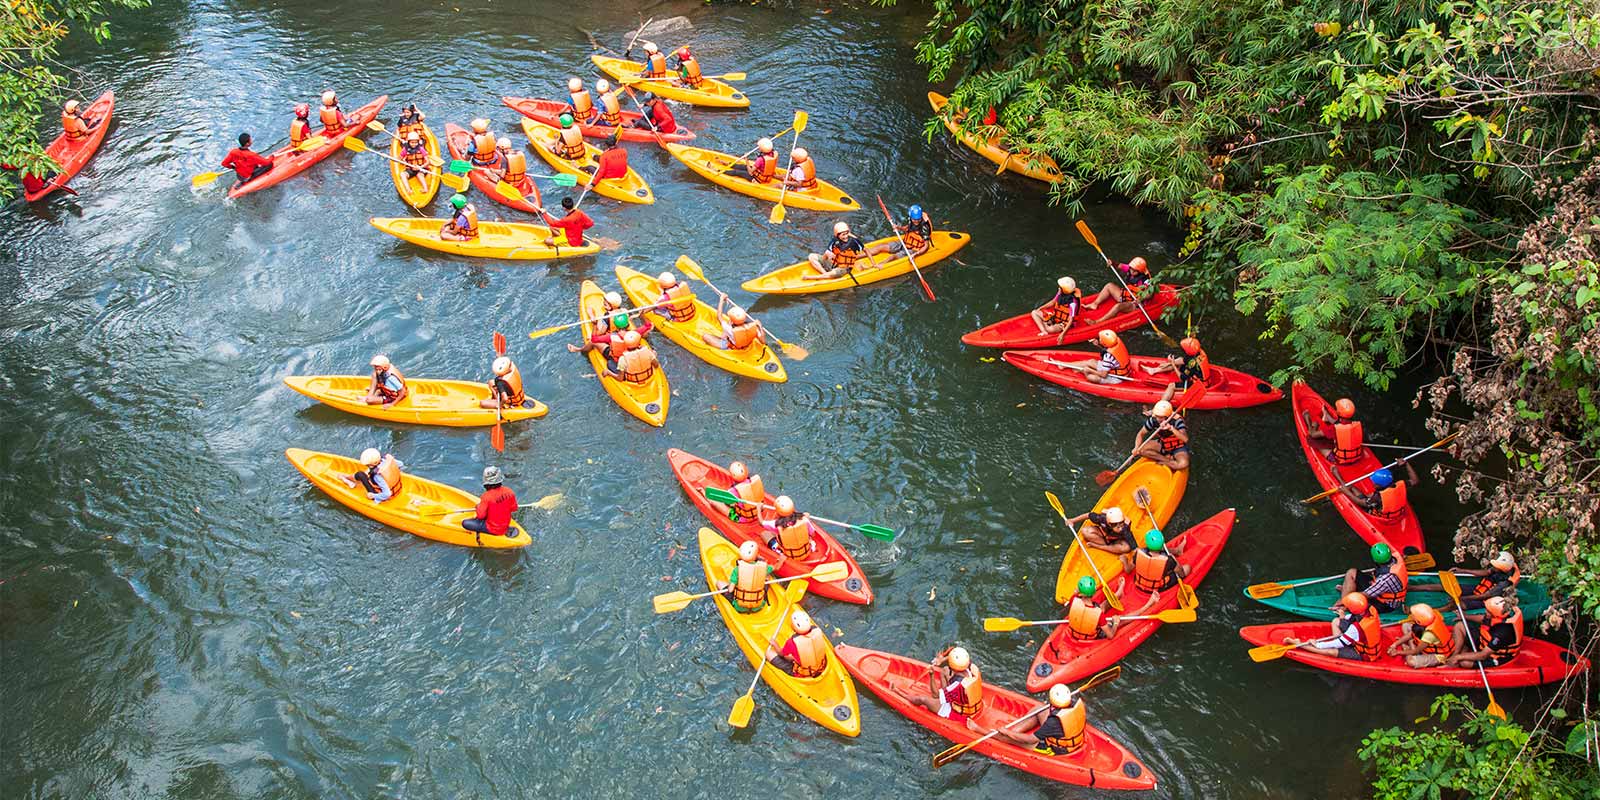 Aerial view of adventure group in kayaks